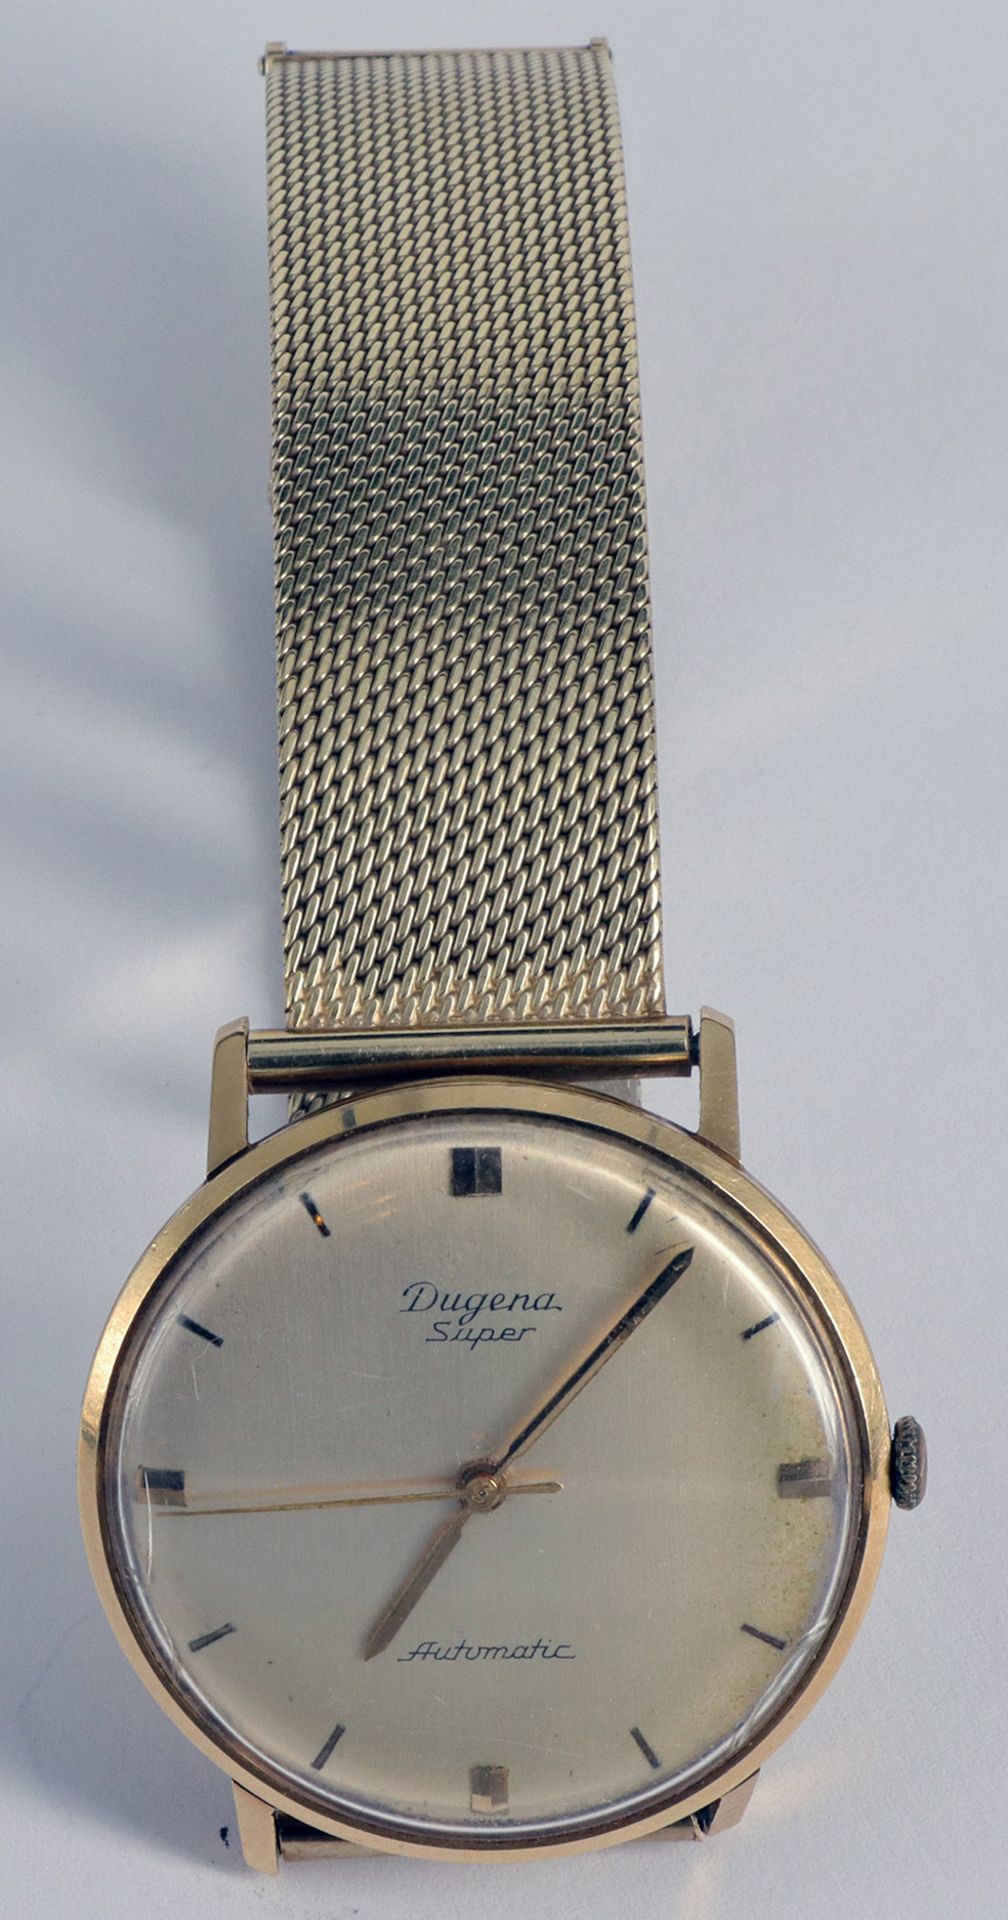 Konvolut Herrenarmbanduhren, davon eine in Gold/ collection of men's wrist watches, one in gold: - Bild 3 aus 4